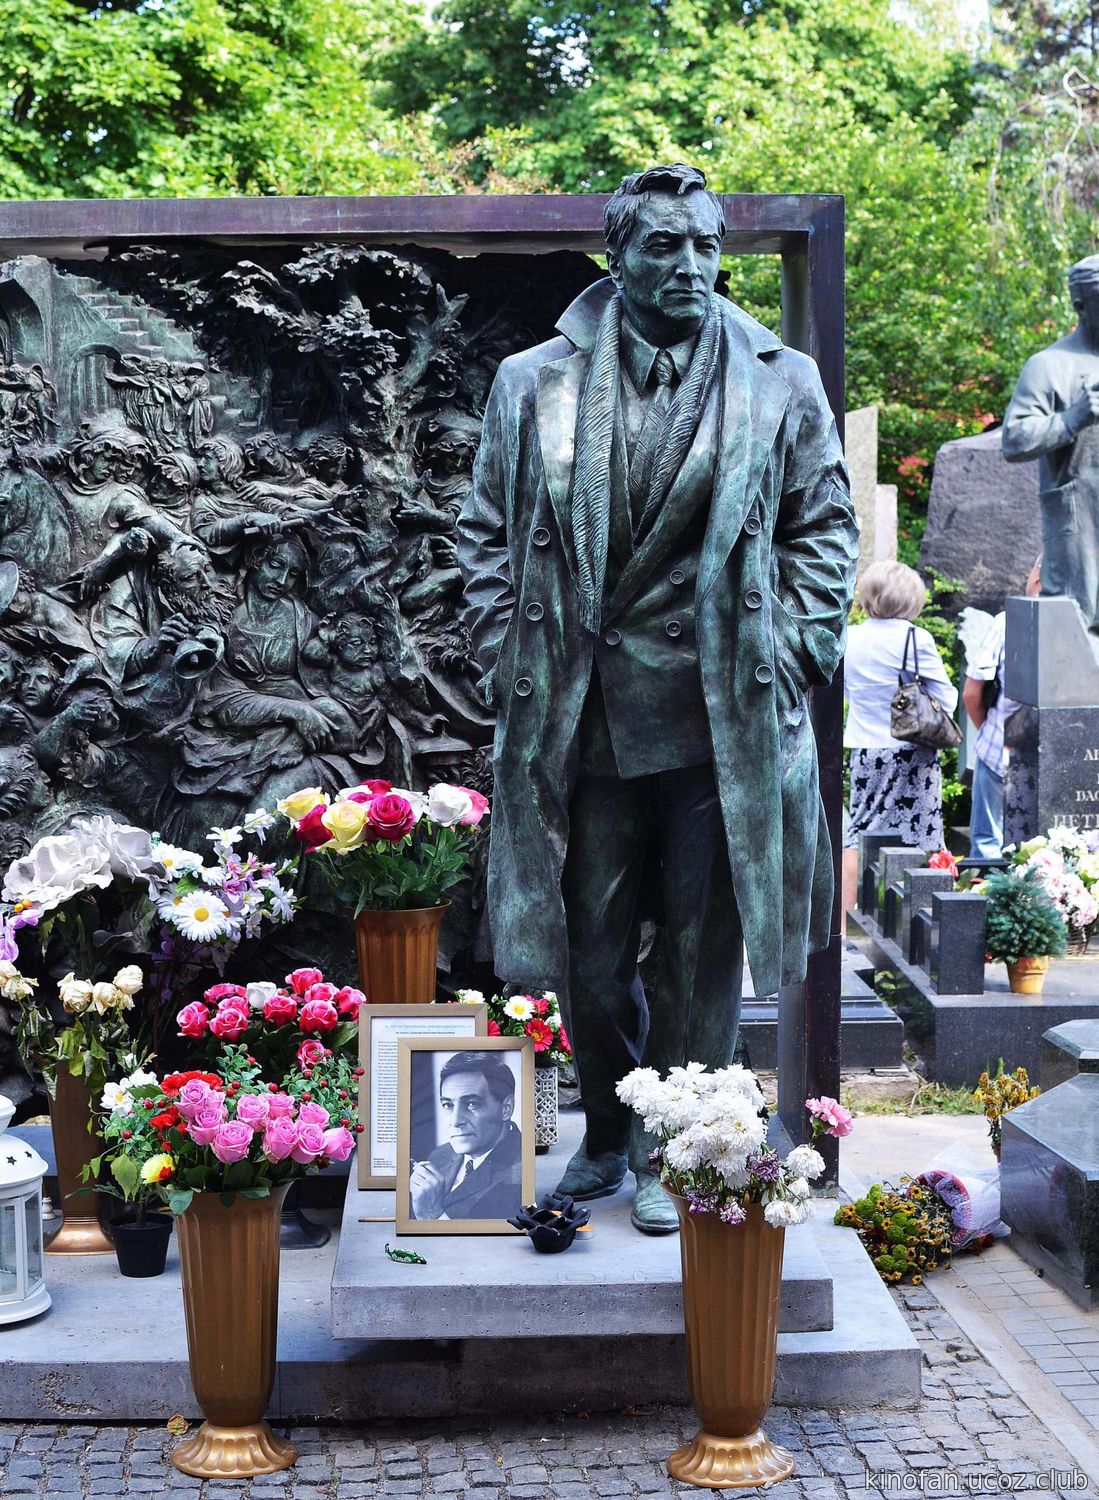 Памятники на новодевичьем кладбище в москве